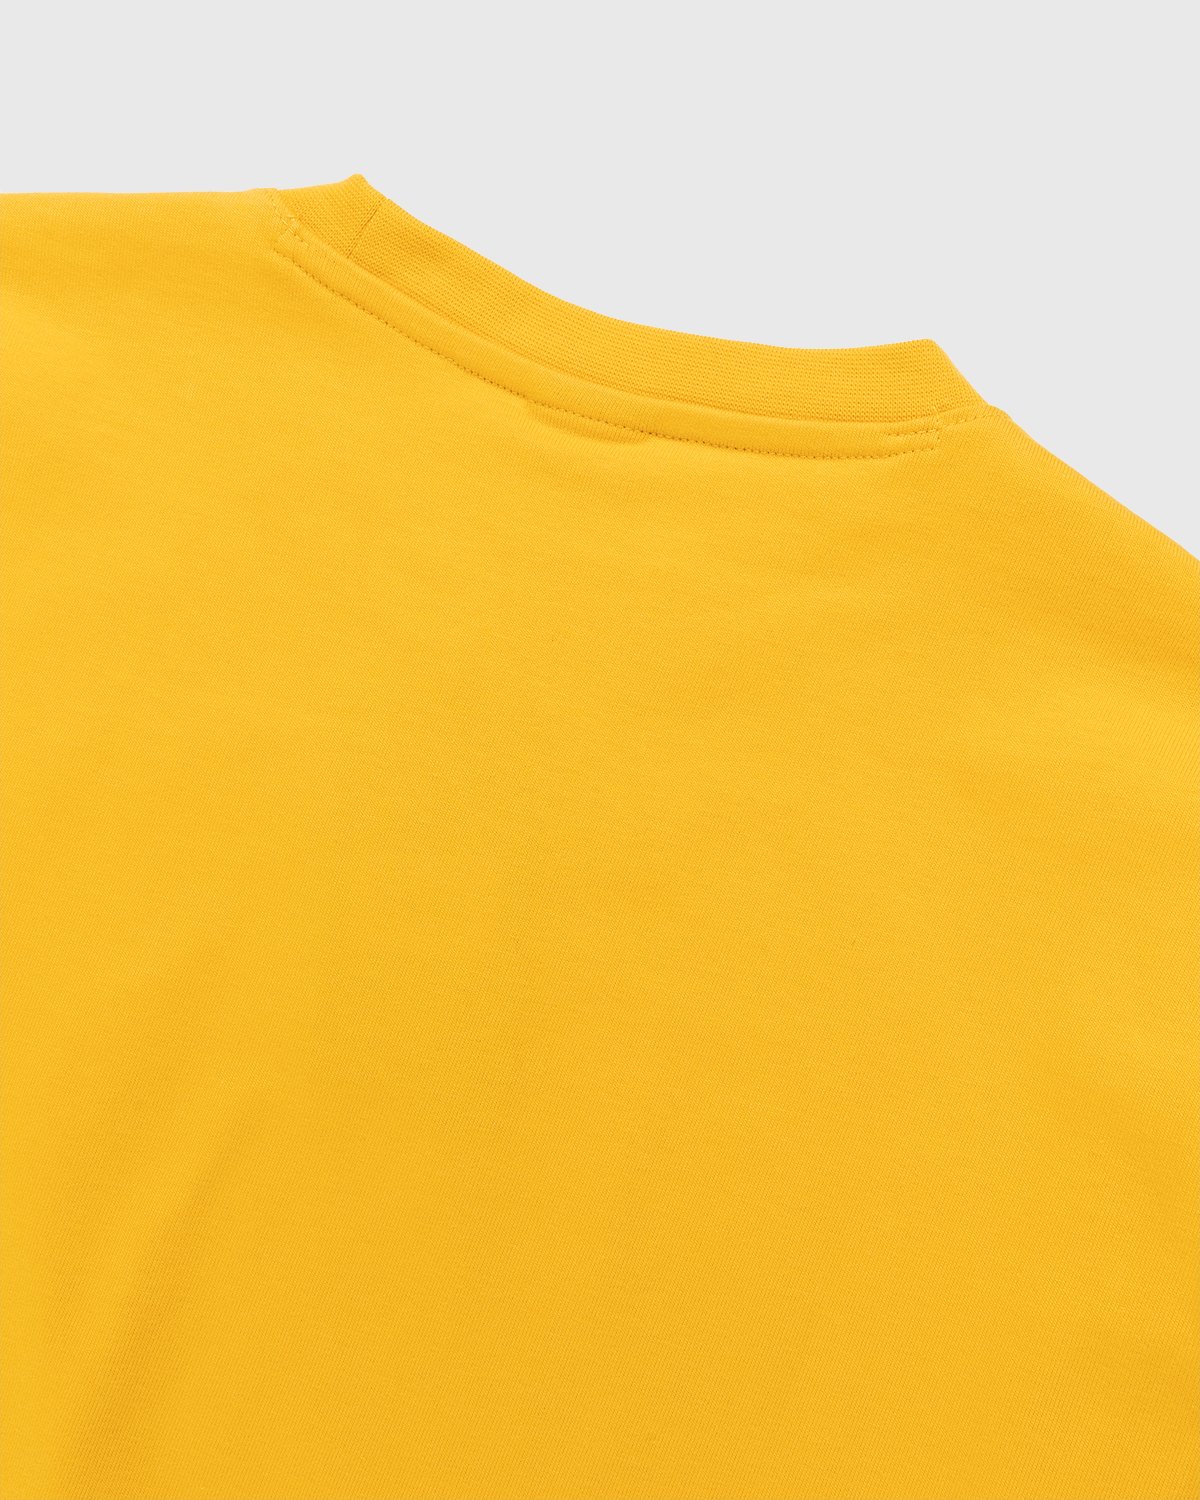 New Balance - Conversations Amongst Us T-Shirt Aspen Yellow - Clothing - Yellow - Image 3